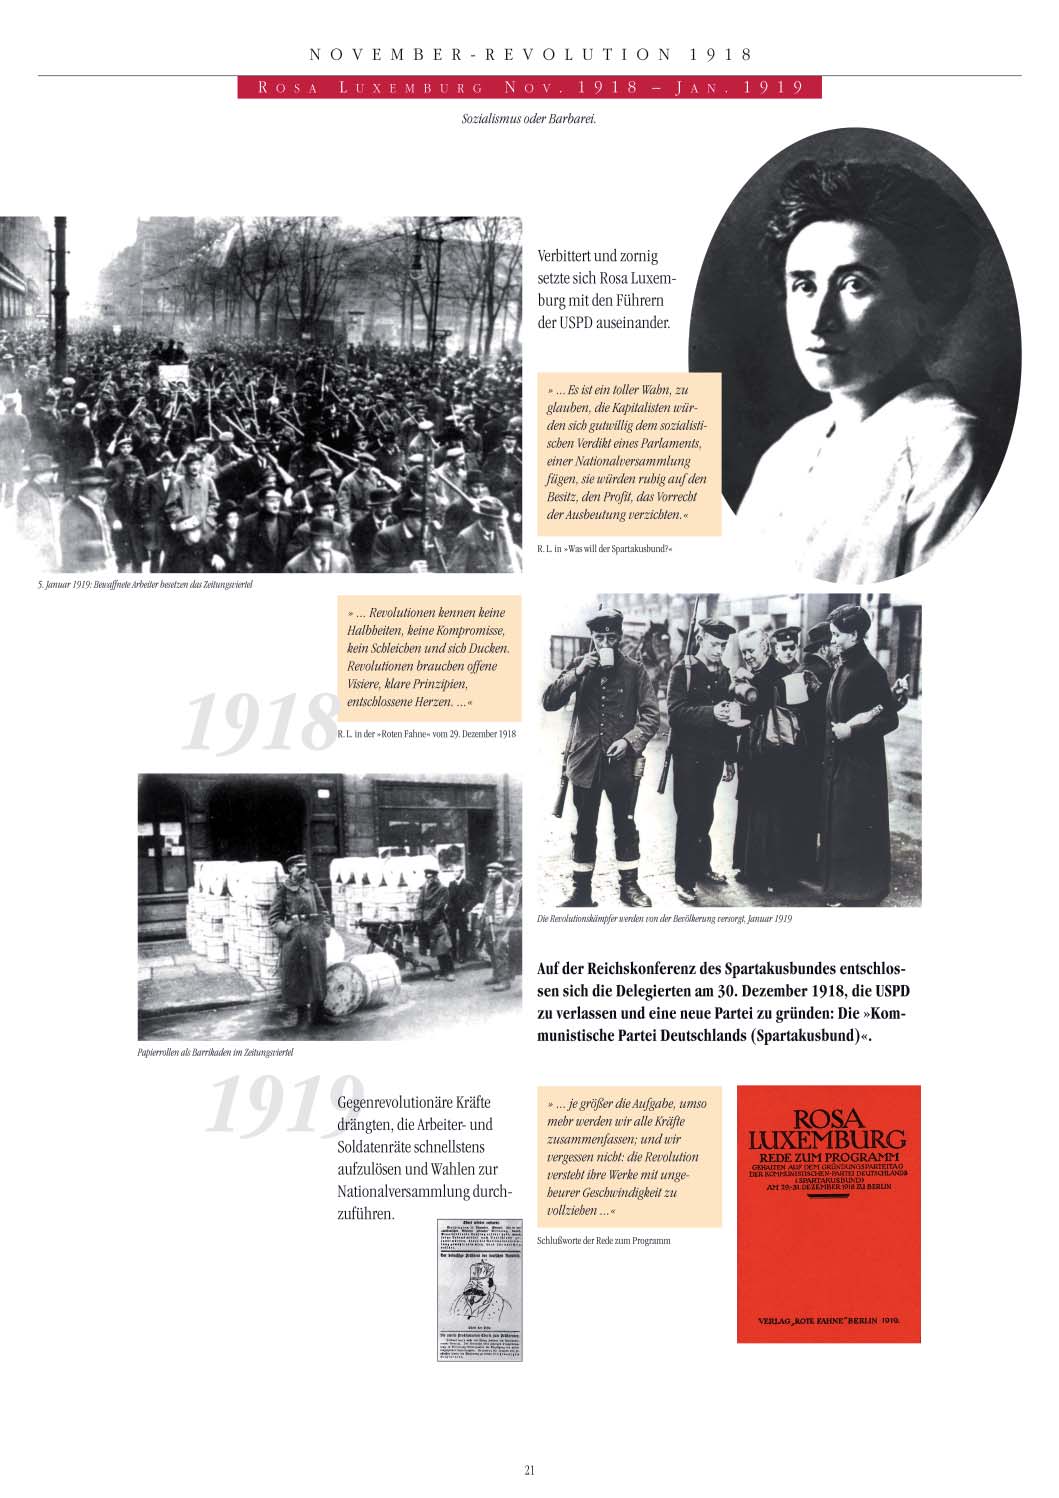 1 9 1 8 K A S I M D E V R İ M İ Rosa Luxemburg Kasım 1918 - Ocak 1919 Sosyalizm ya da barbarlık. Rosa Luxemburg USPD nin önderleriyle kızgın bir biçimde tartışmaya girdi.